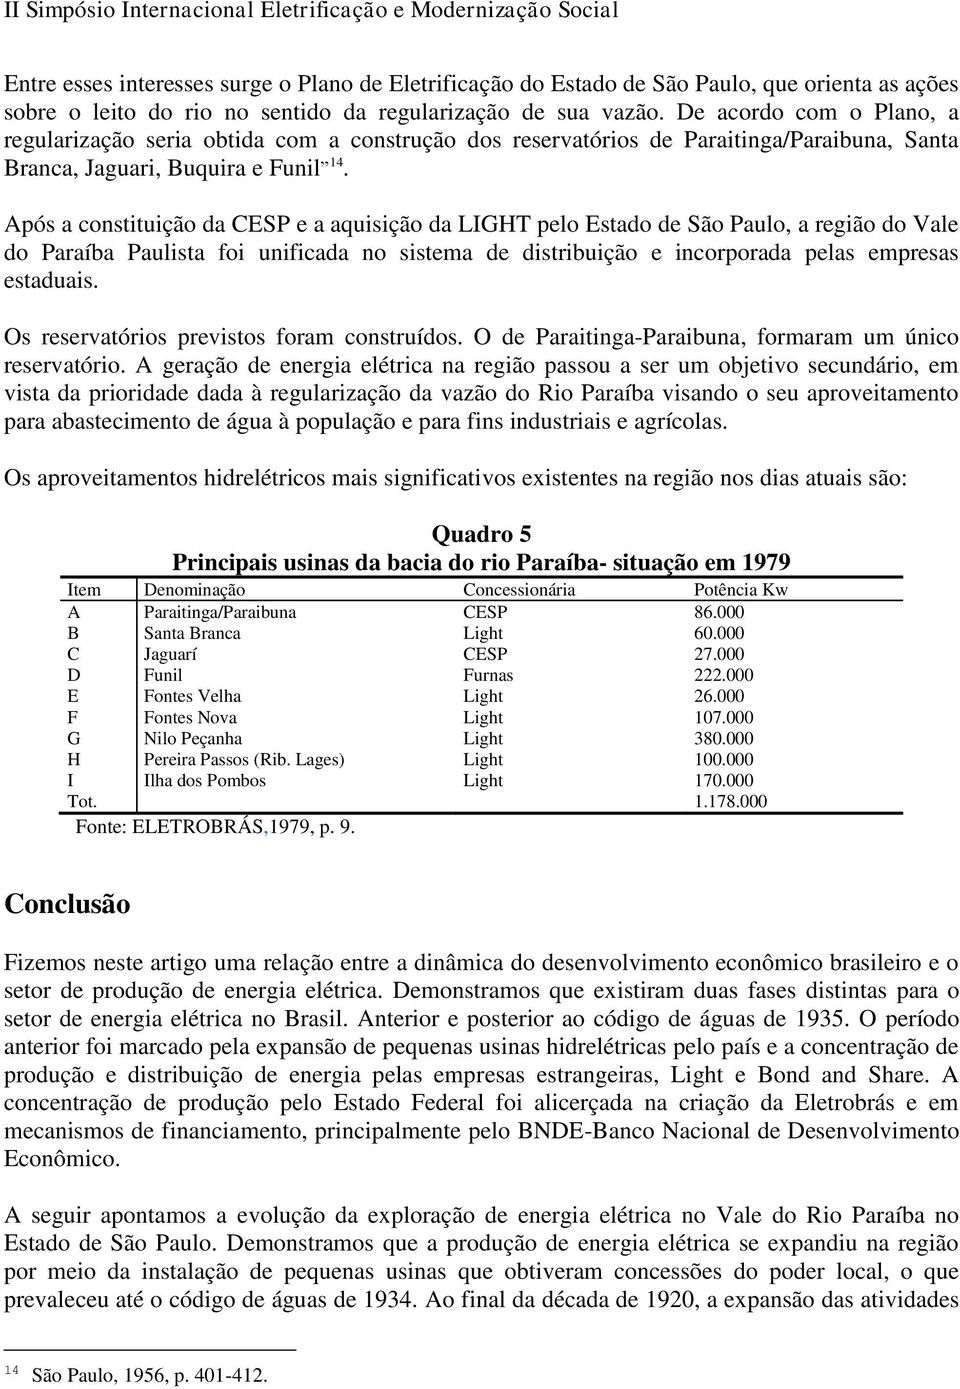 Após a constituição da CESP e a aquisição da LIGHT pelo Estado de São Paulo, a região do Vale do Paraíba Paulista foi unificada no sistema de distribuição e incorporada pelas empresas estaduais.